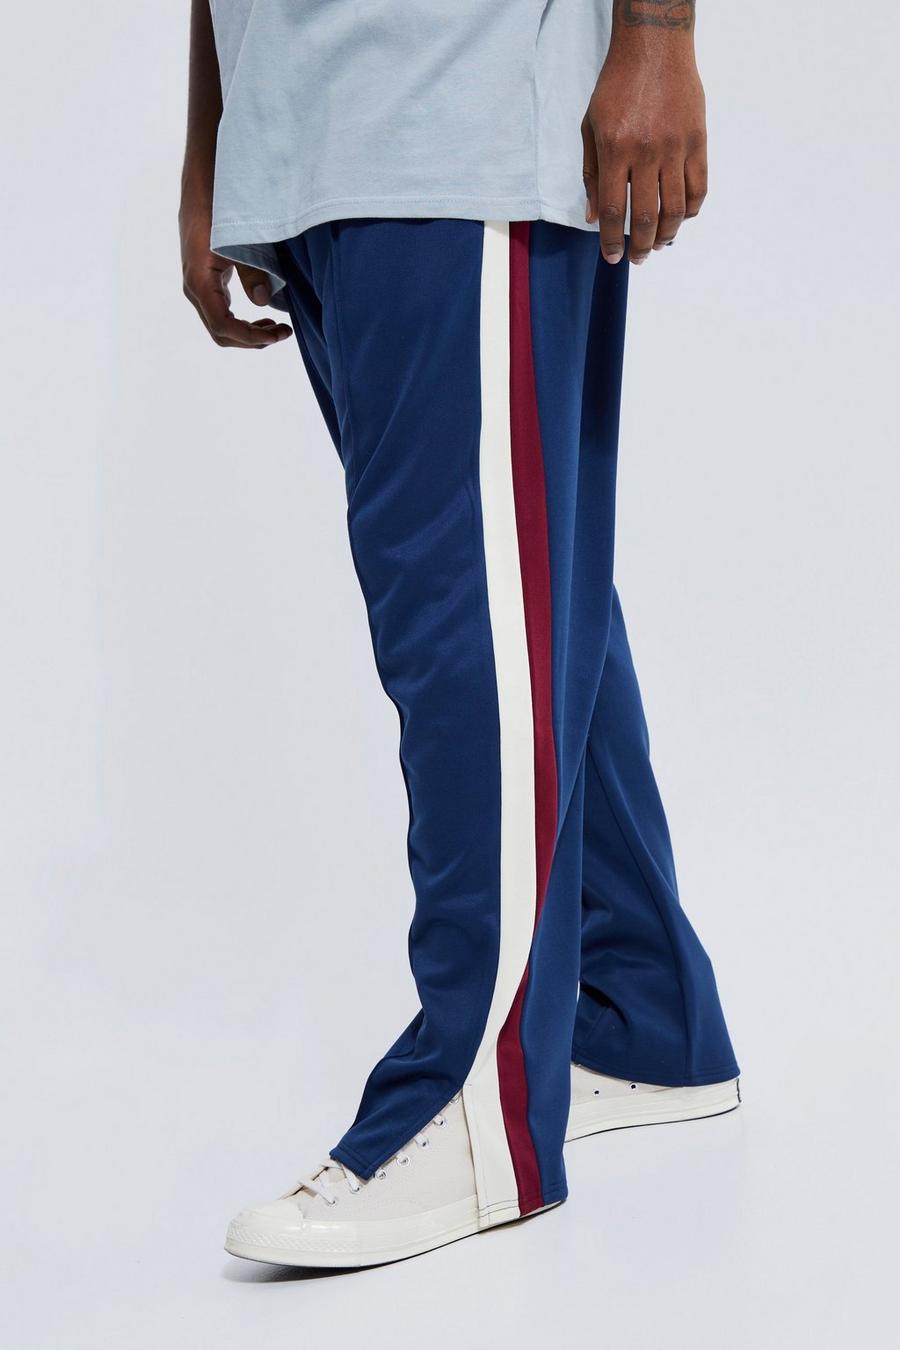 Pantaloni tuta Plus Size Offcl in tricot con nervature, pannelli e spacco sul fondo, Navy azul marino